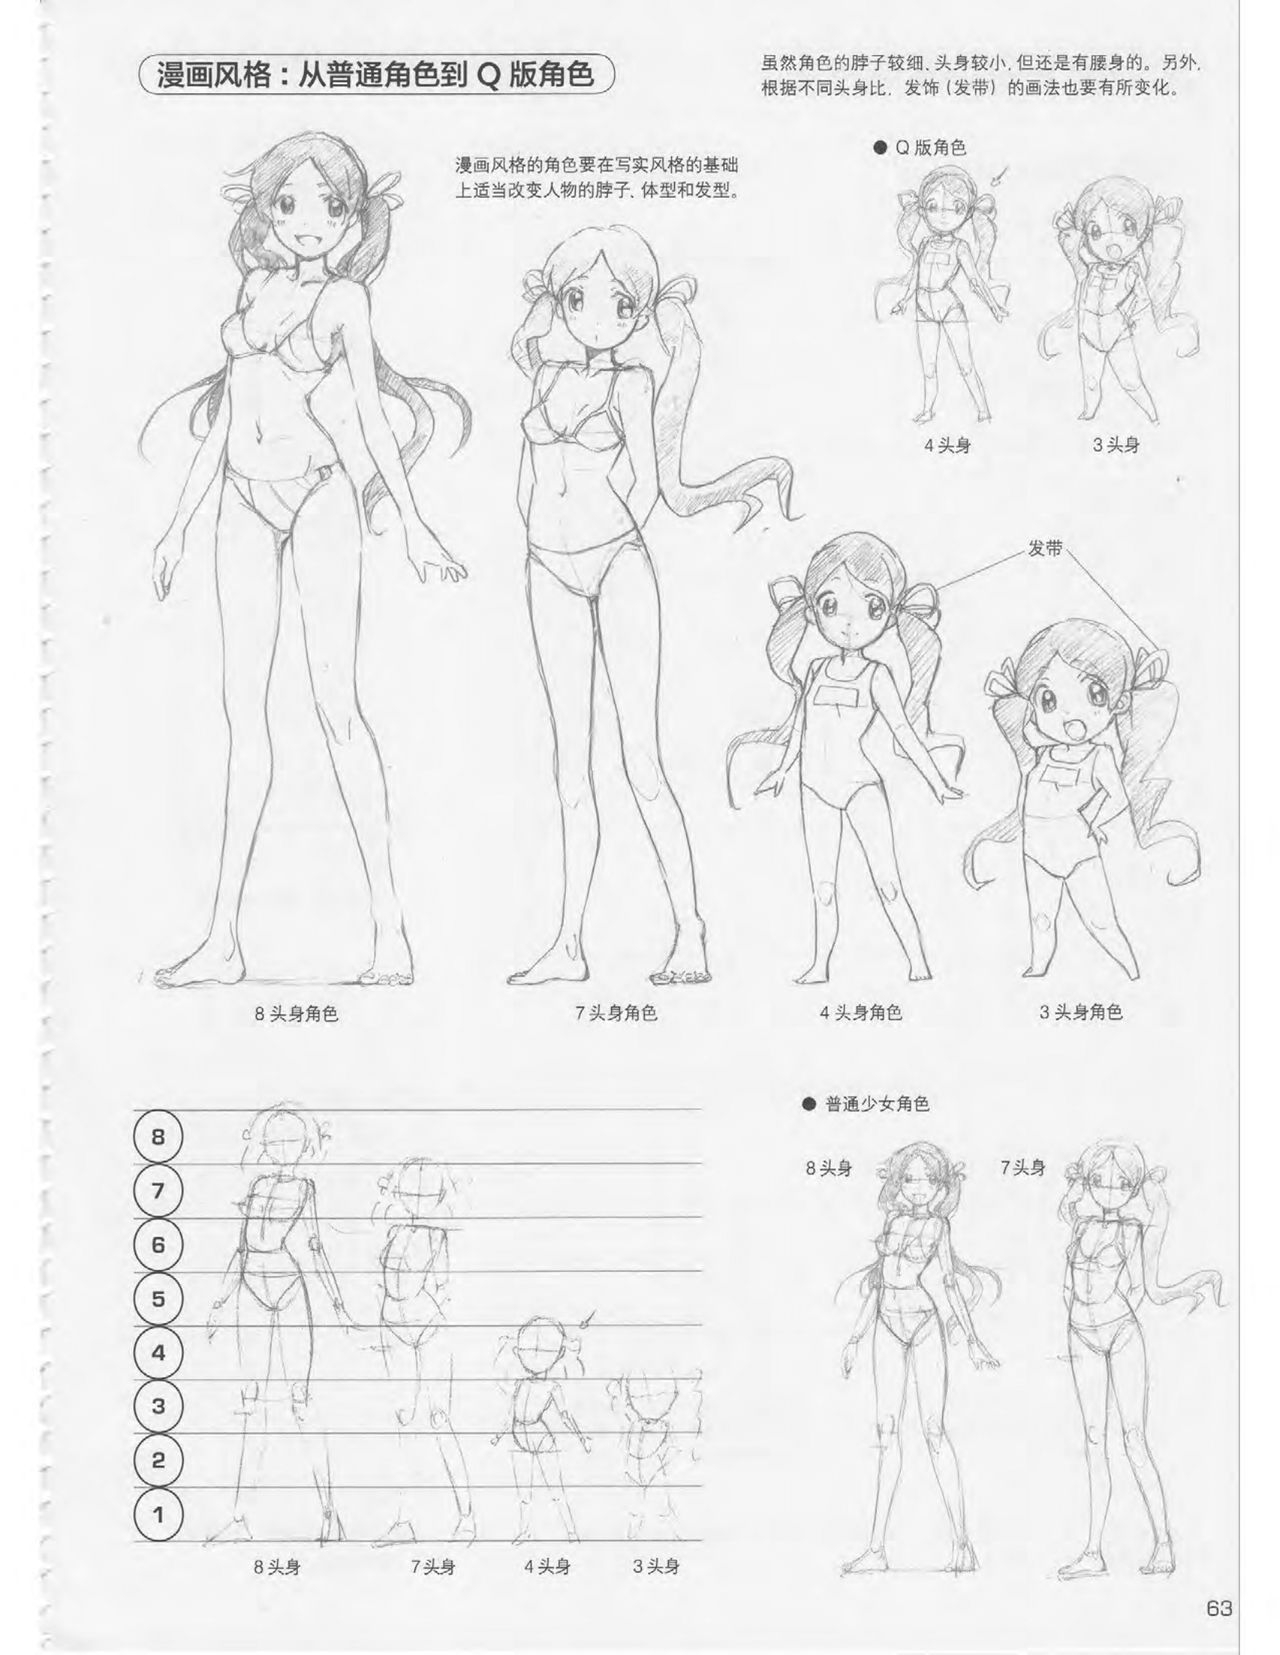 Japanese Manga Master Lecture 3: Lin Akira and Kakumaru Maru Talk About Glamorous Character Modeling 63